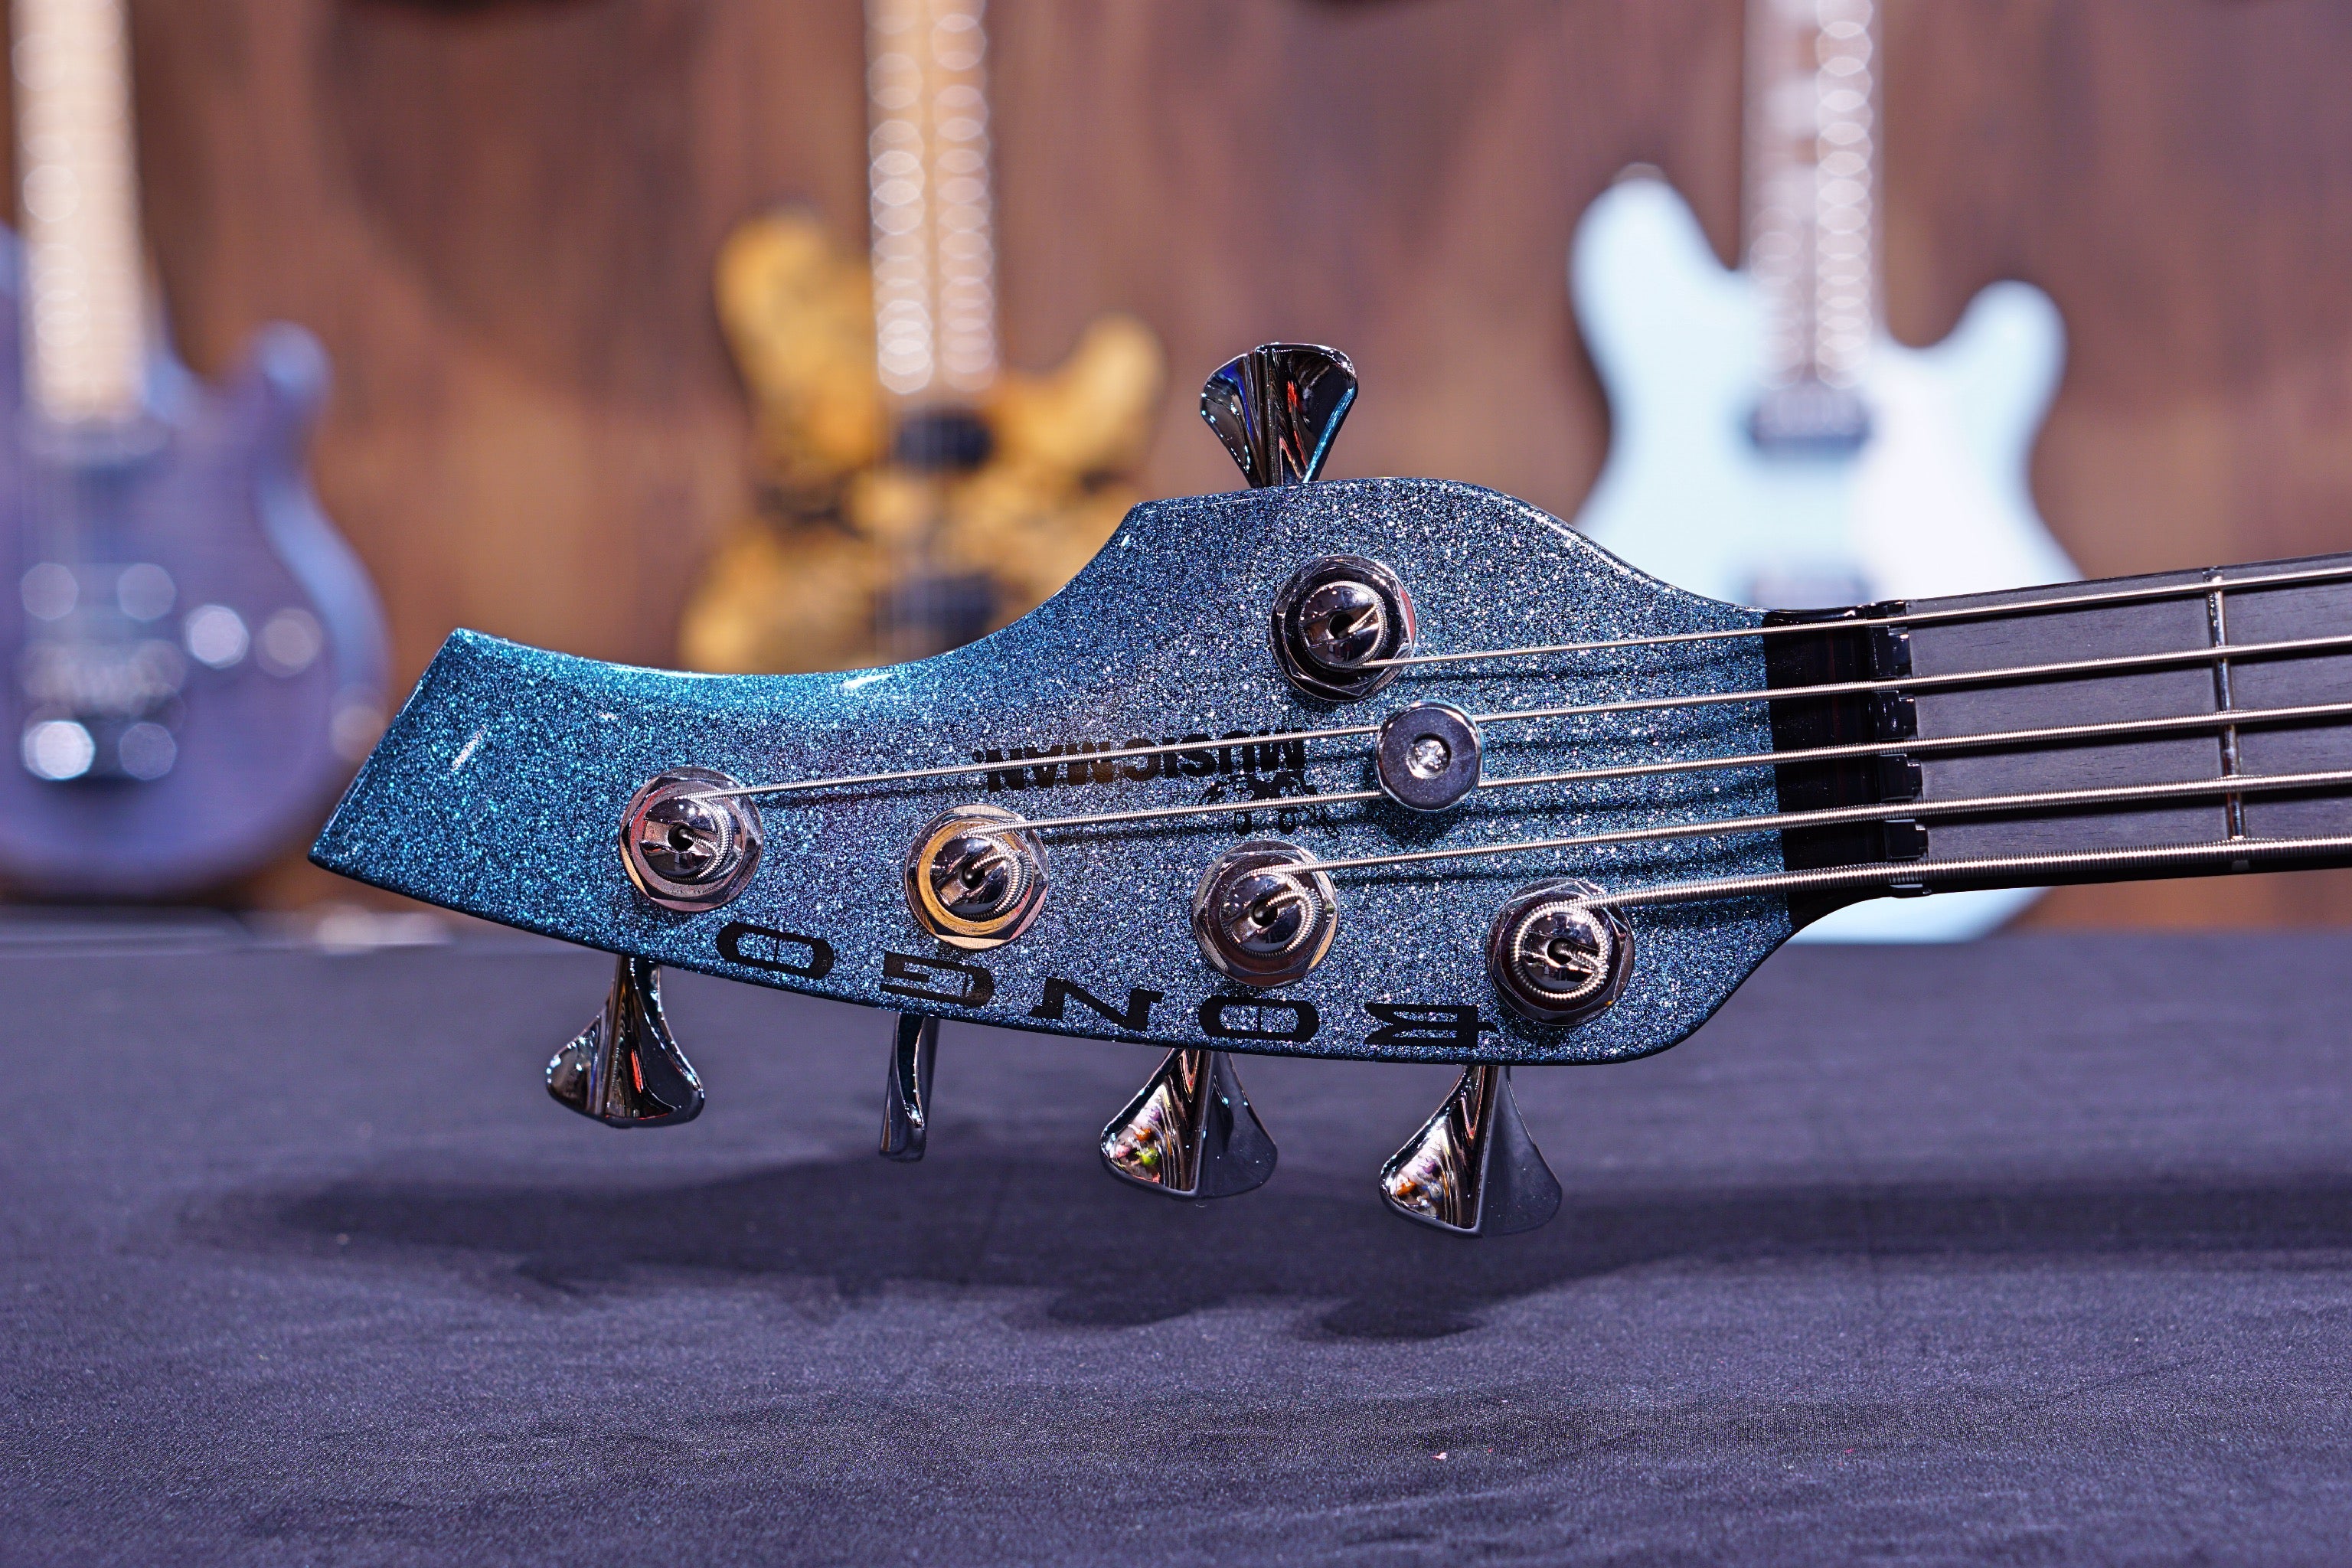 Ernie Ball Music Man Bongo 5 Bass Guitar - Aqua sparkle F91501 - HIENDGUITAR   Musicman bass